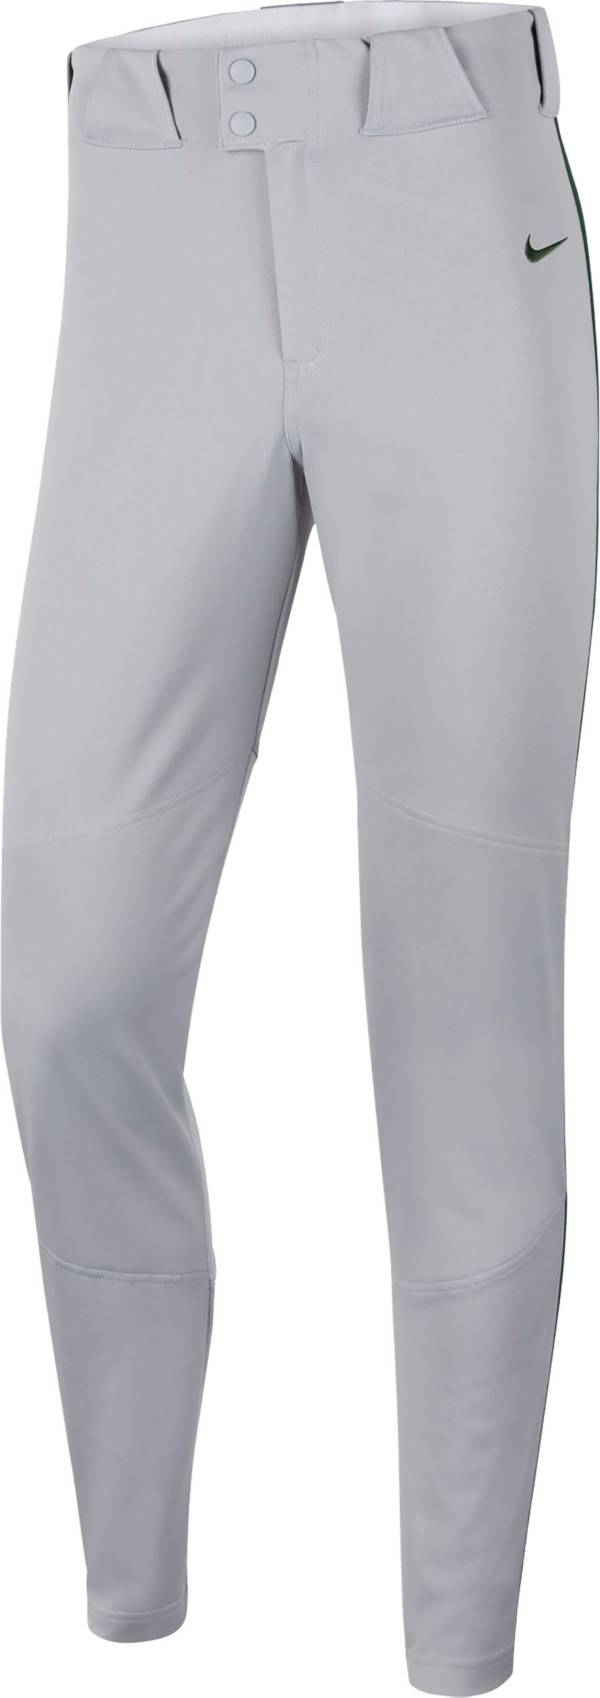 Rendición escarcha micrófono Nike Men's Vapor Select Piped Baseball Pants | Dick's Sporting Goods